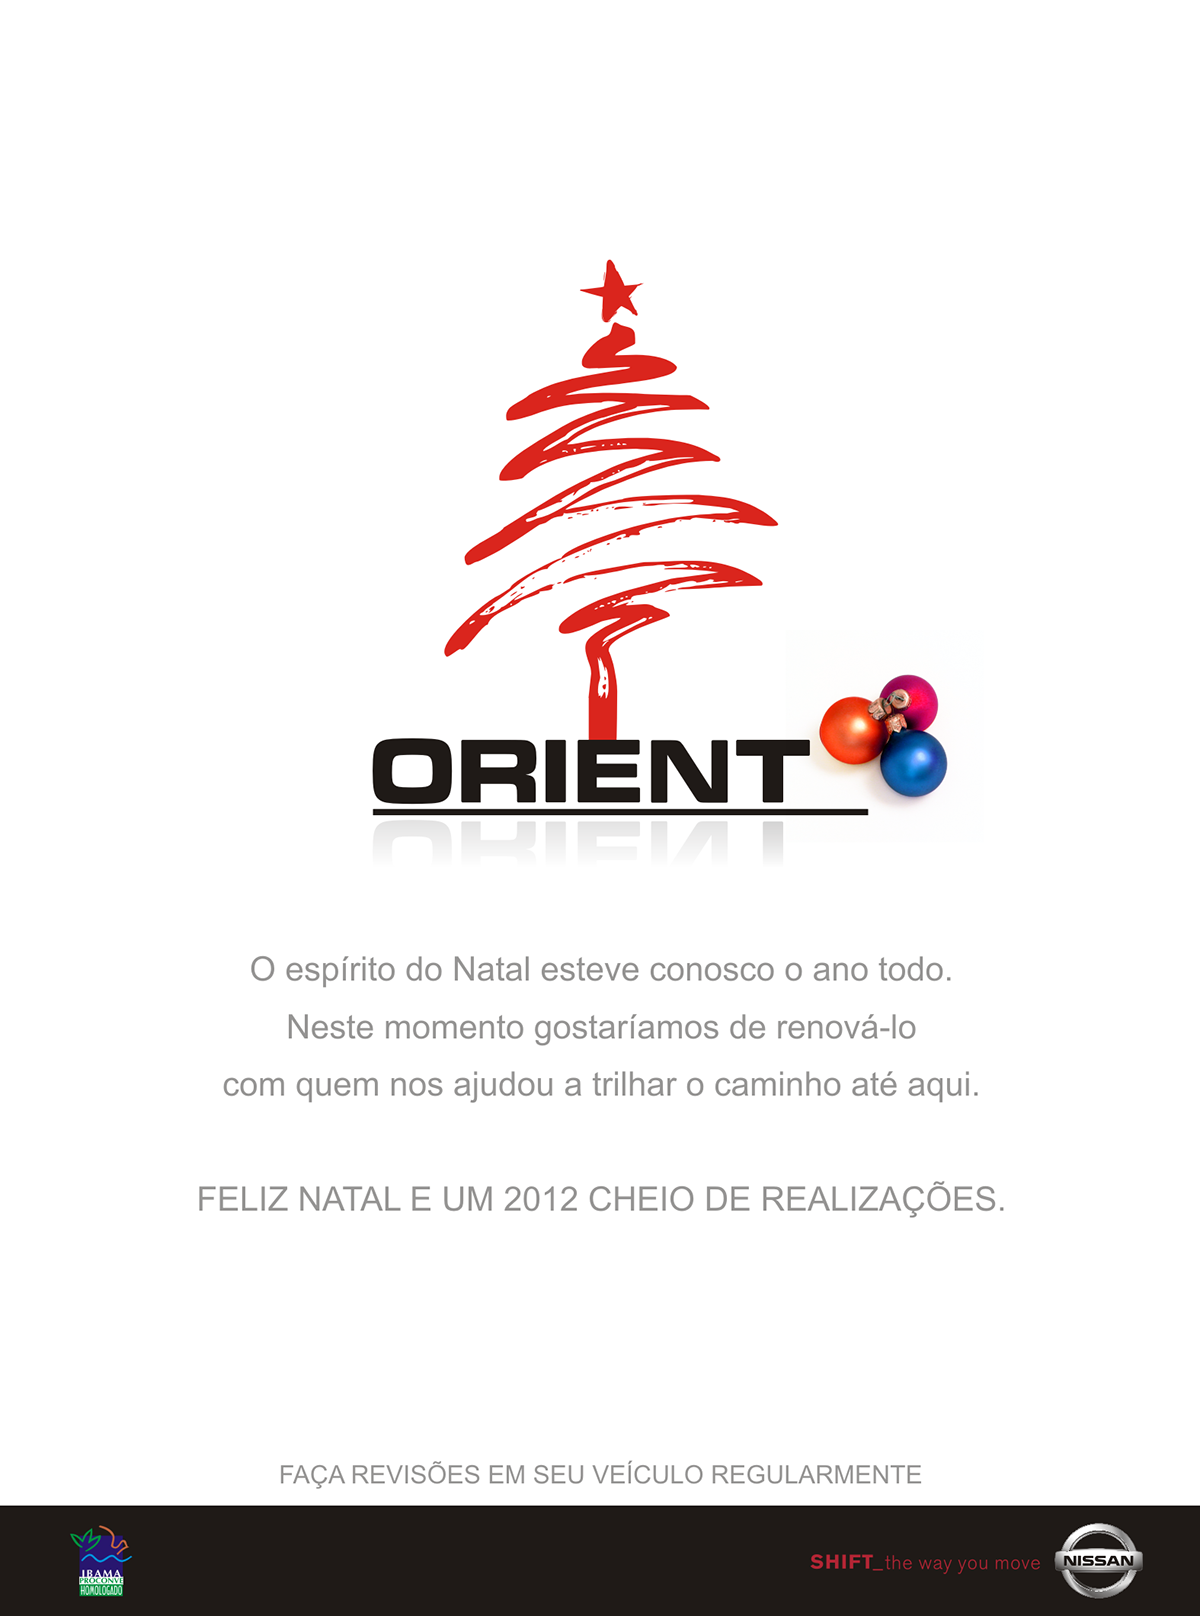 Orient Nissan varejo publicidade